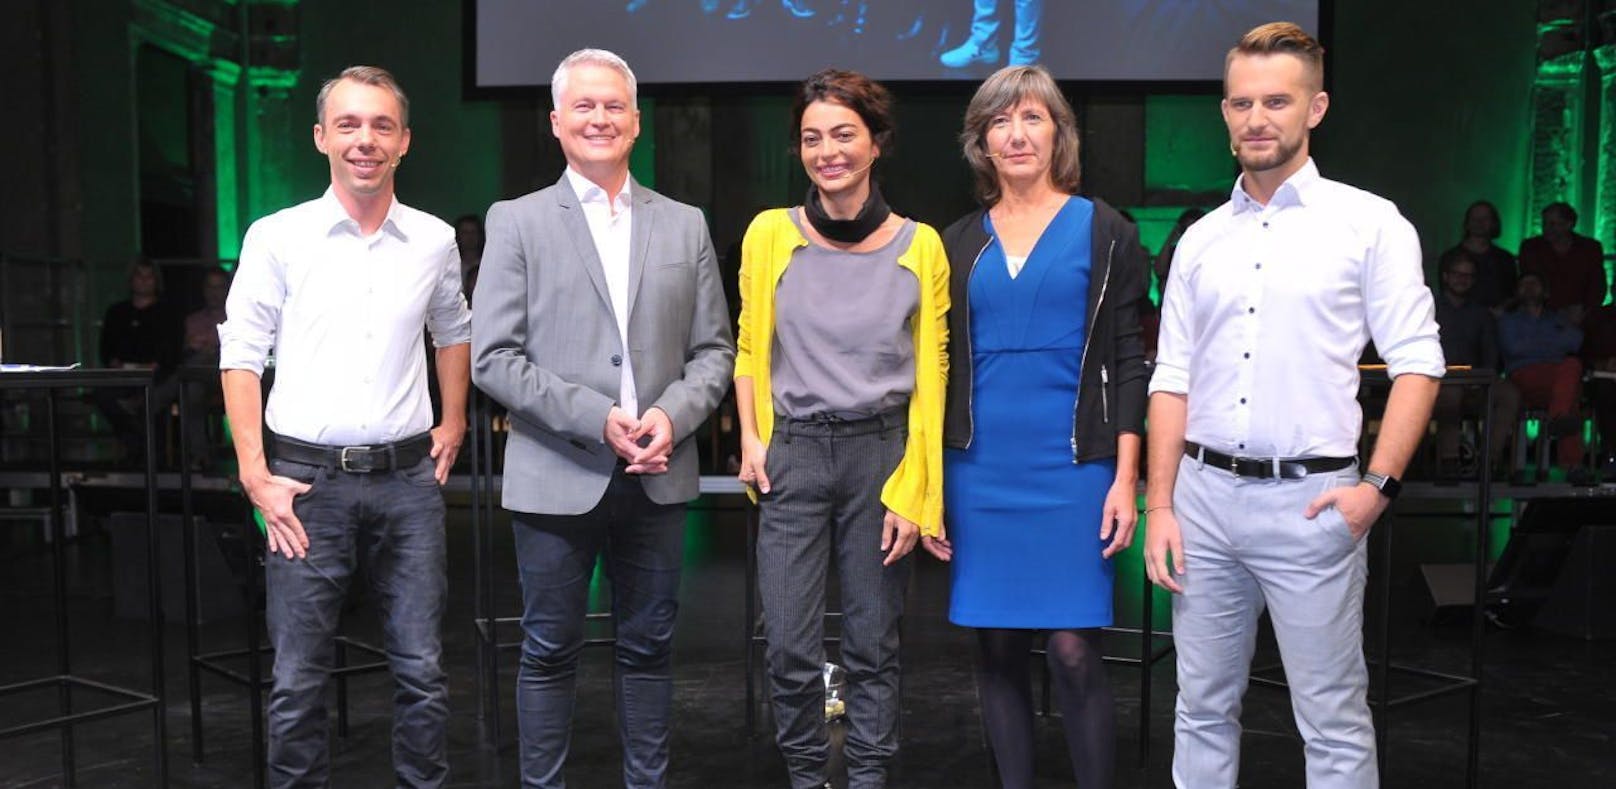 Die fünf Kandidaten: Benjamin Kaan, David Ellensohn, Marihan Abensperg-Traun, Birgit Hebein und Peter Kraus (von links)